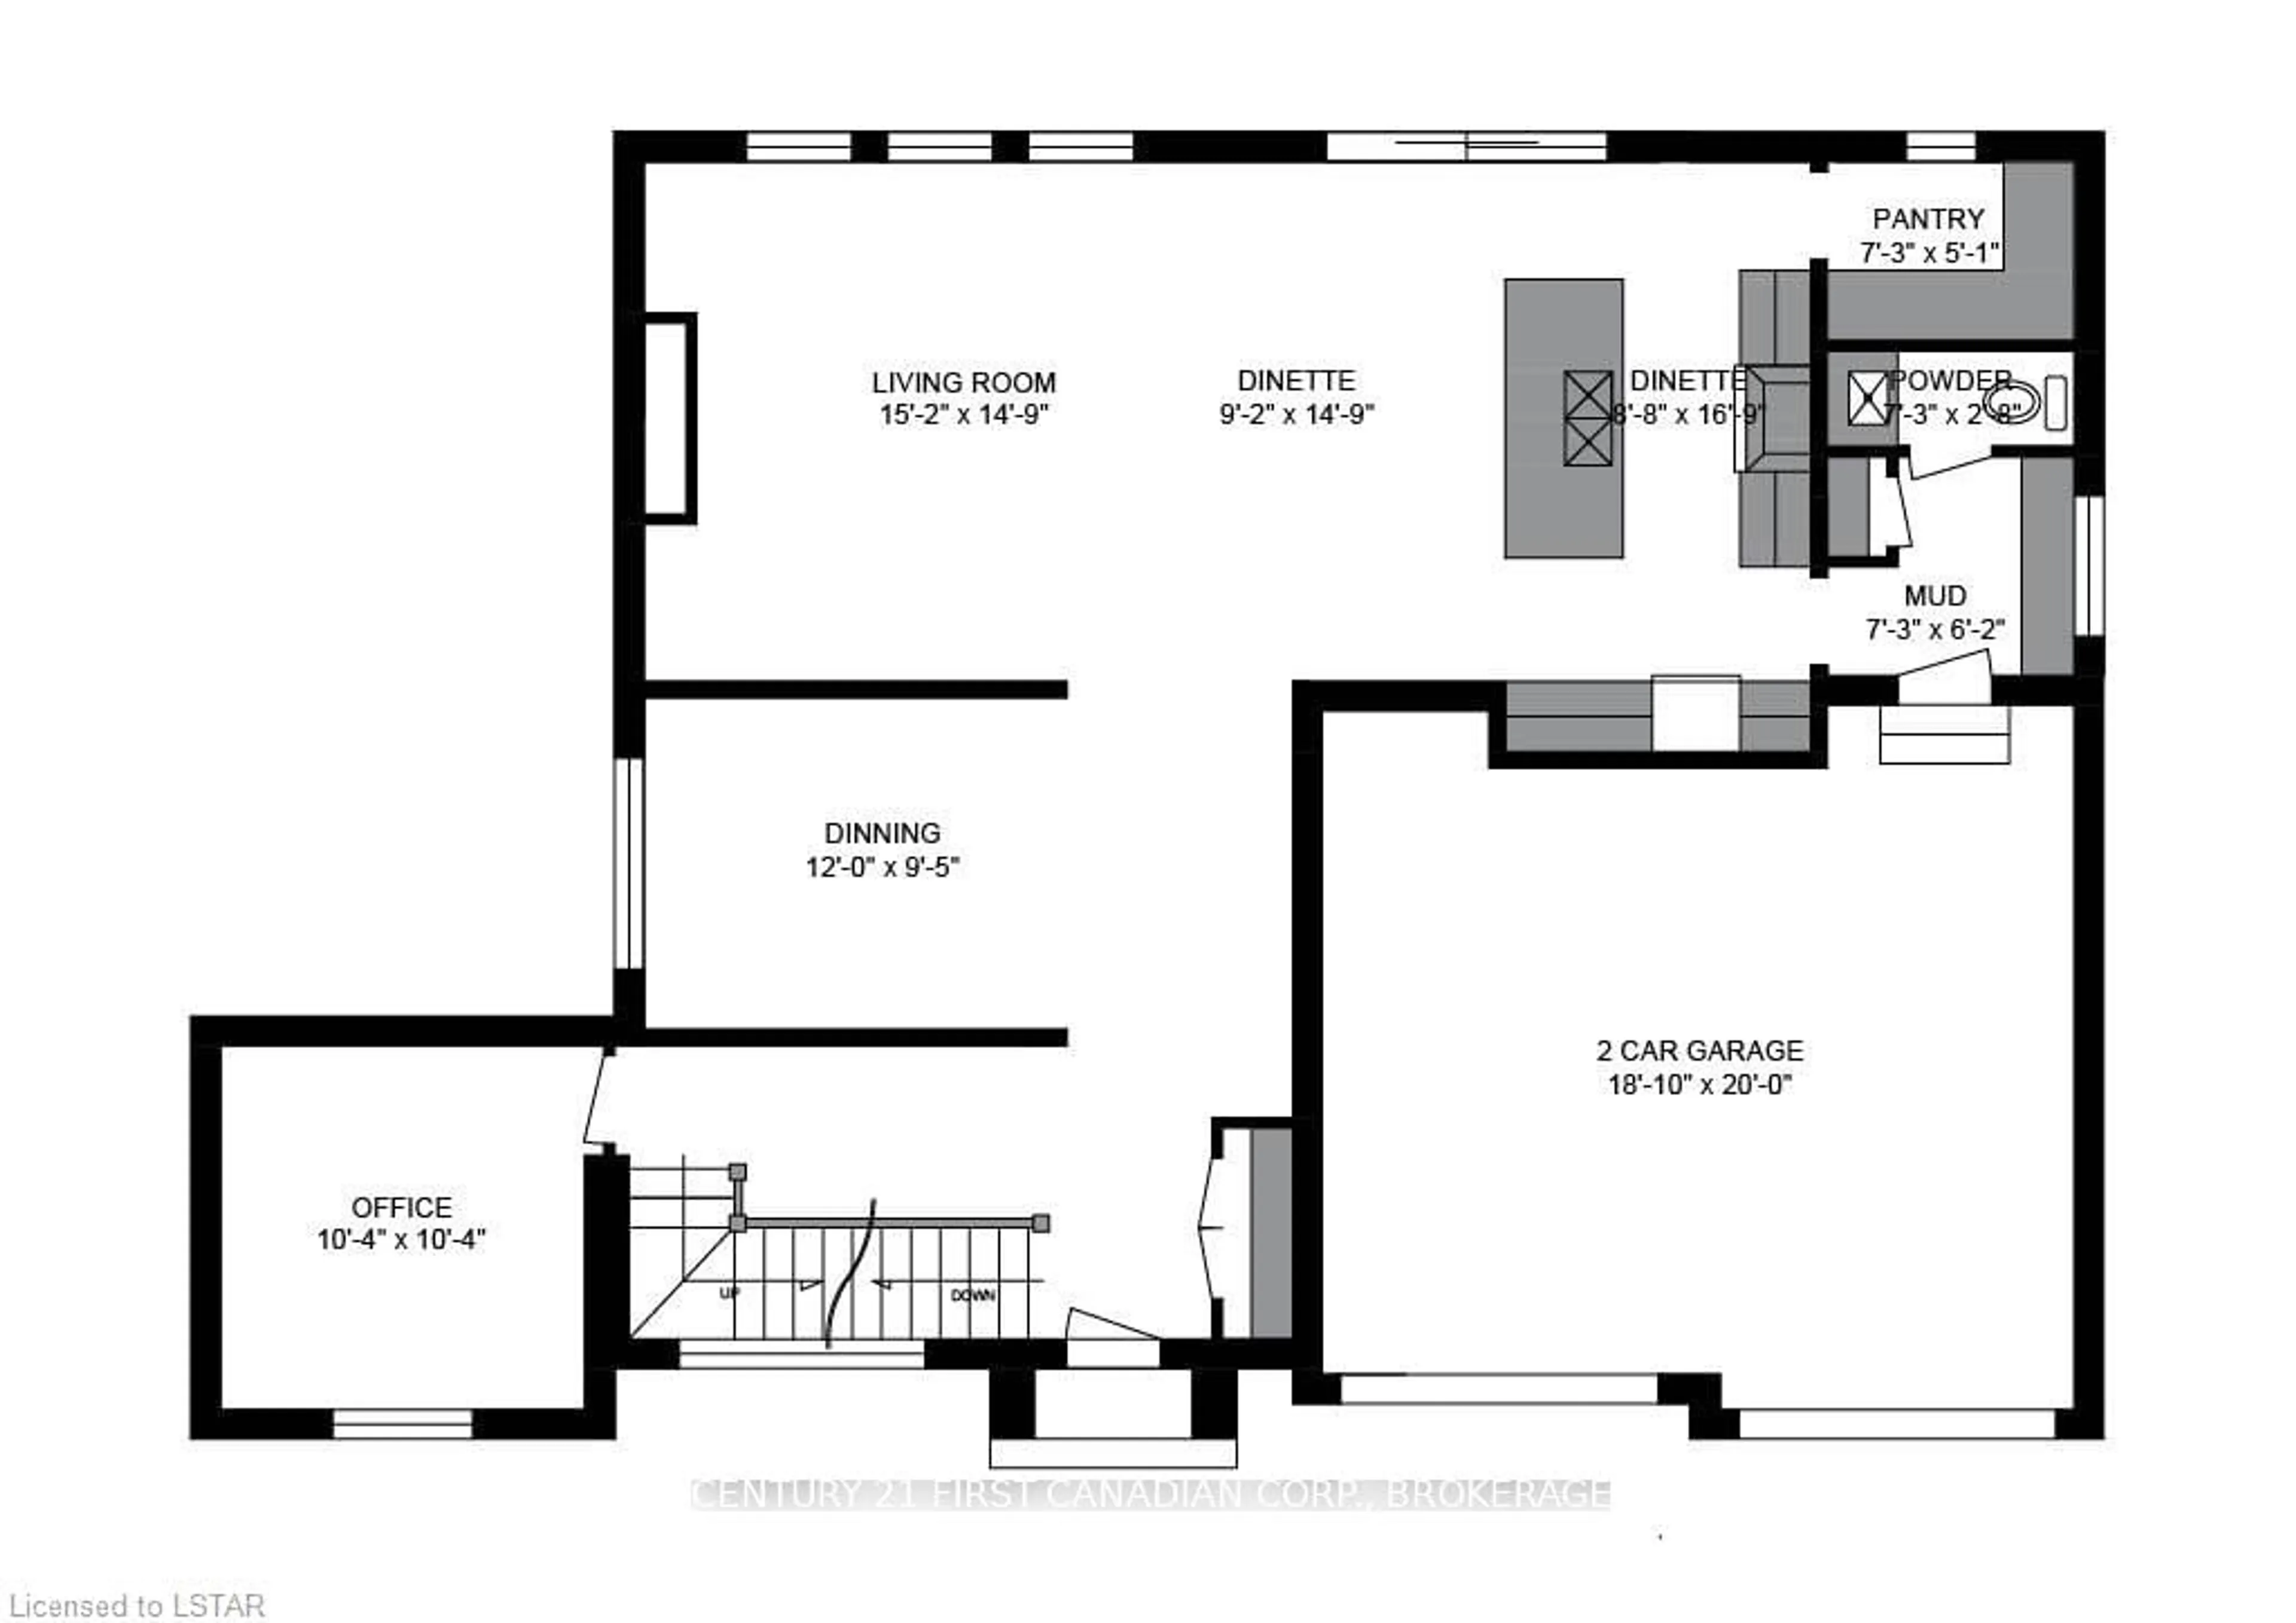 Floor plan for 2172 LINKWAY Blvd, London Ontario N6K 0C8